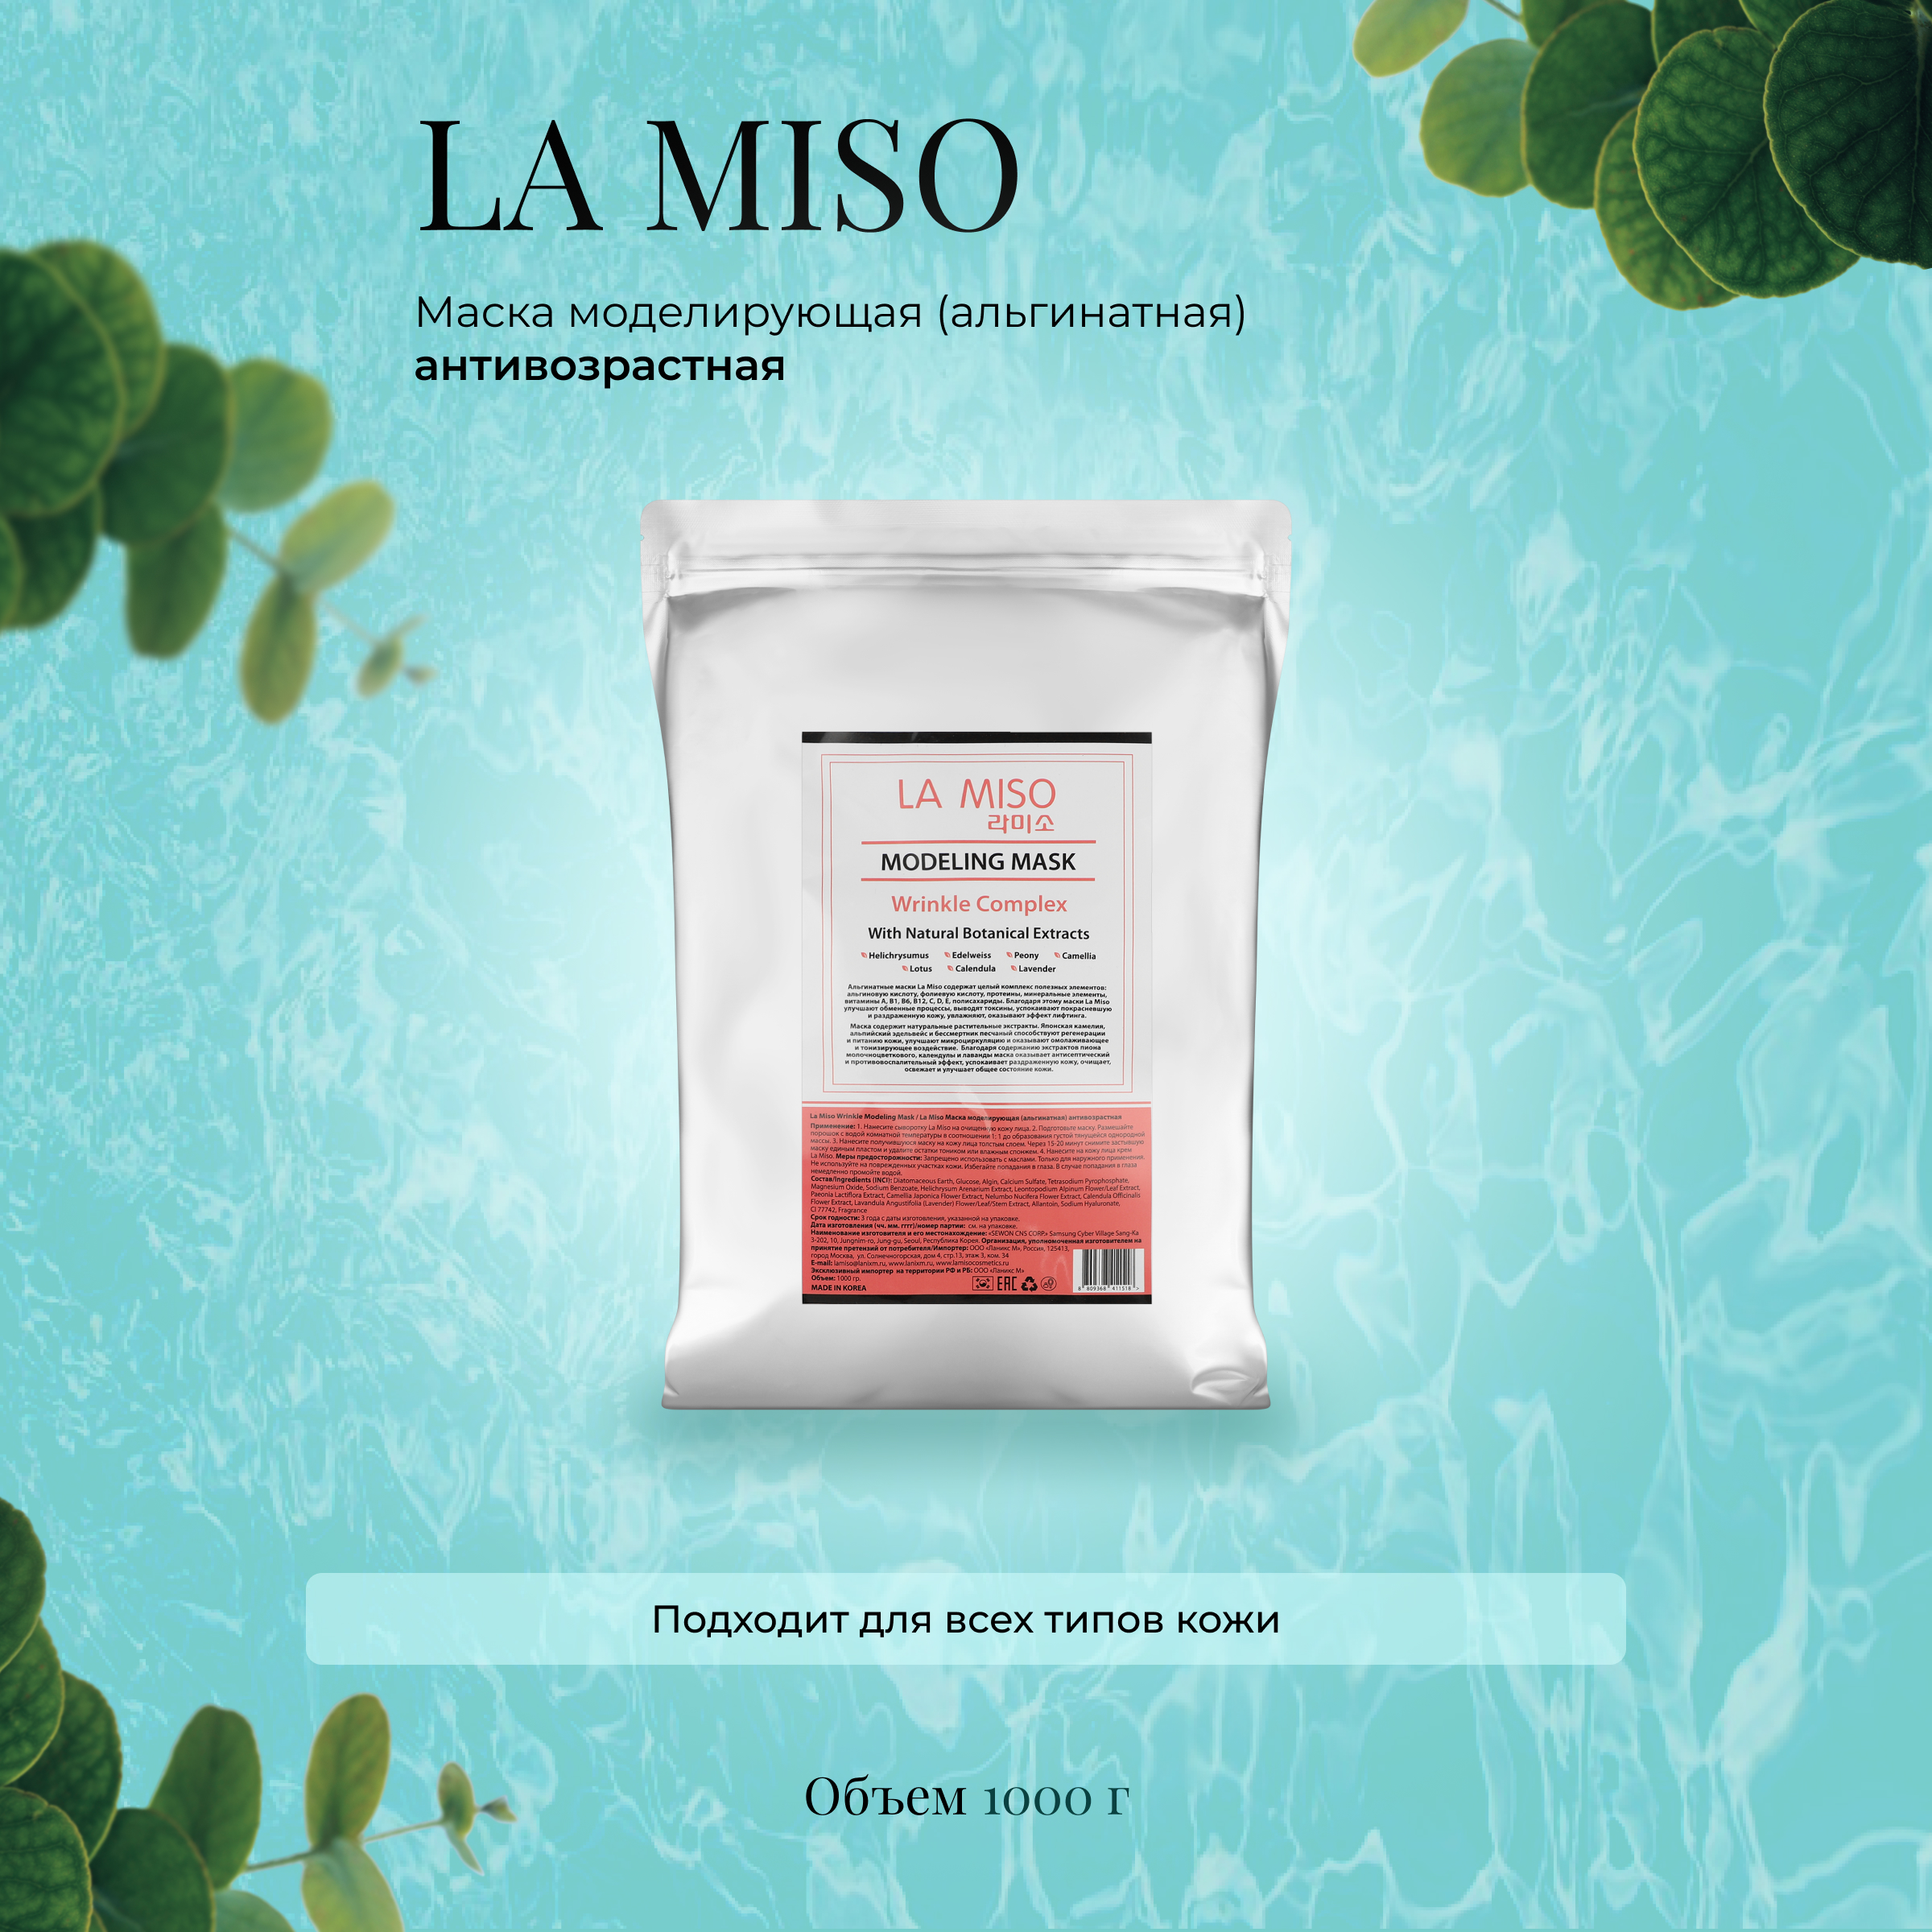 Маска La Miso моделирующая альгинатная антивозрастная 1000г альгинатная маска anskin herb lavender modeling mask refill 1кг